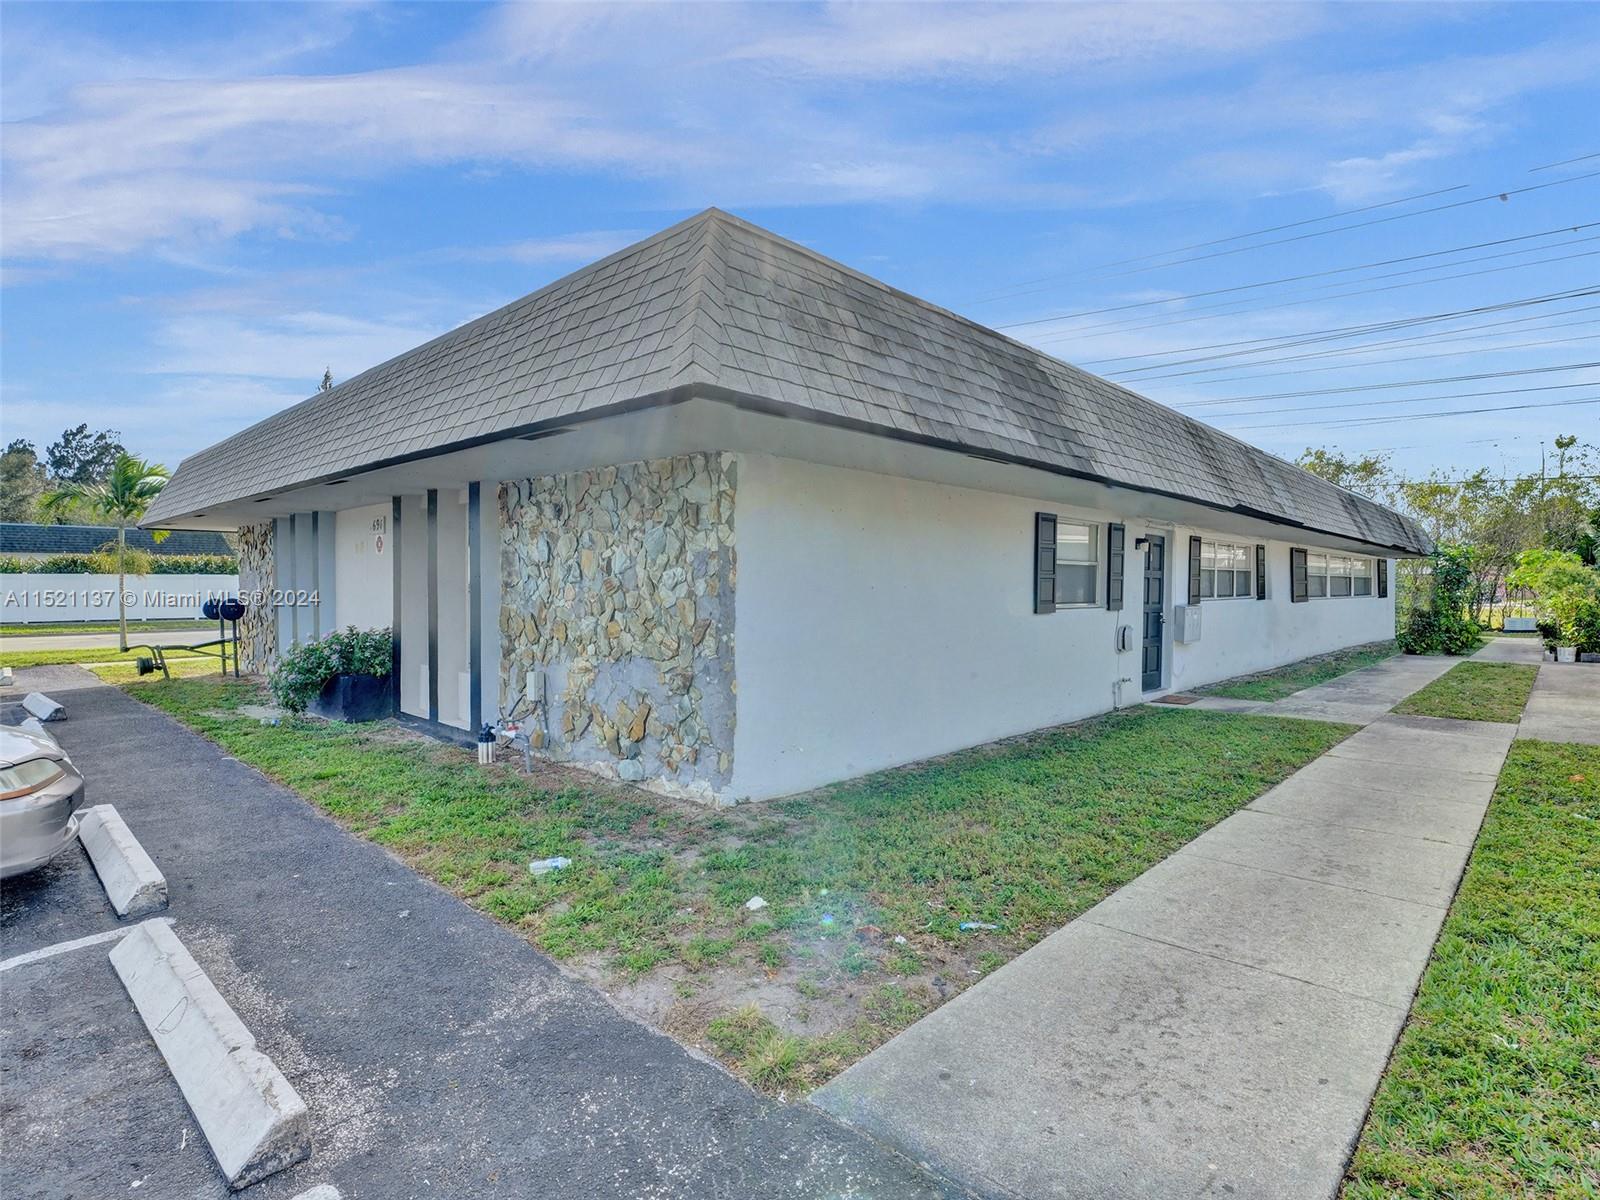 Rental Property at 691 Kathy Ln Ln, Margate, Broward County, Florida -  - $1,300,000 MO.